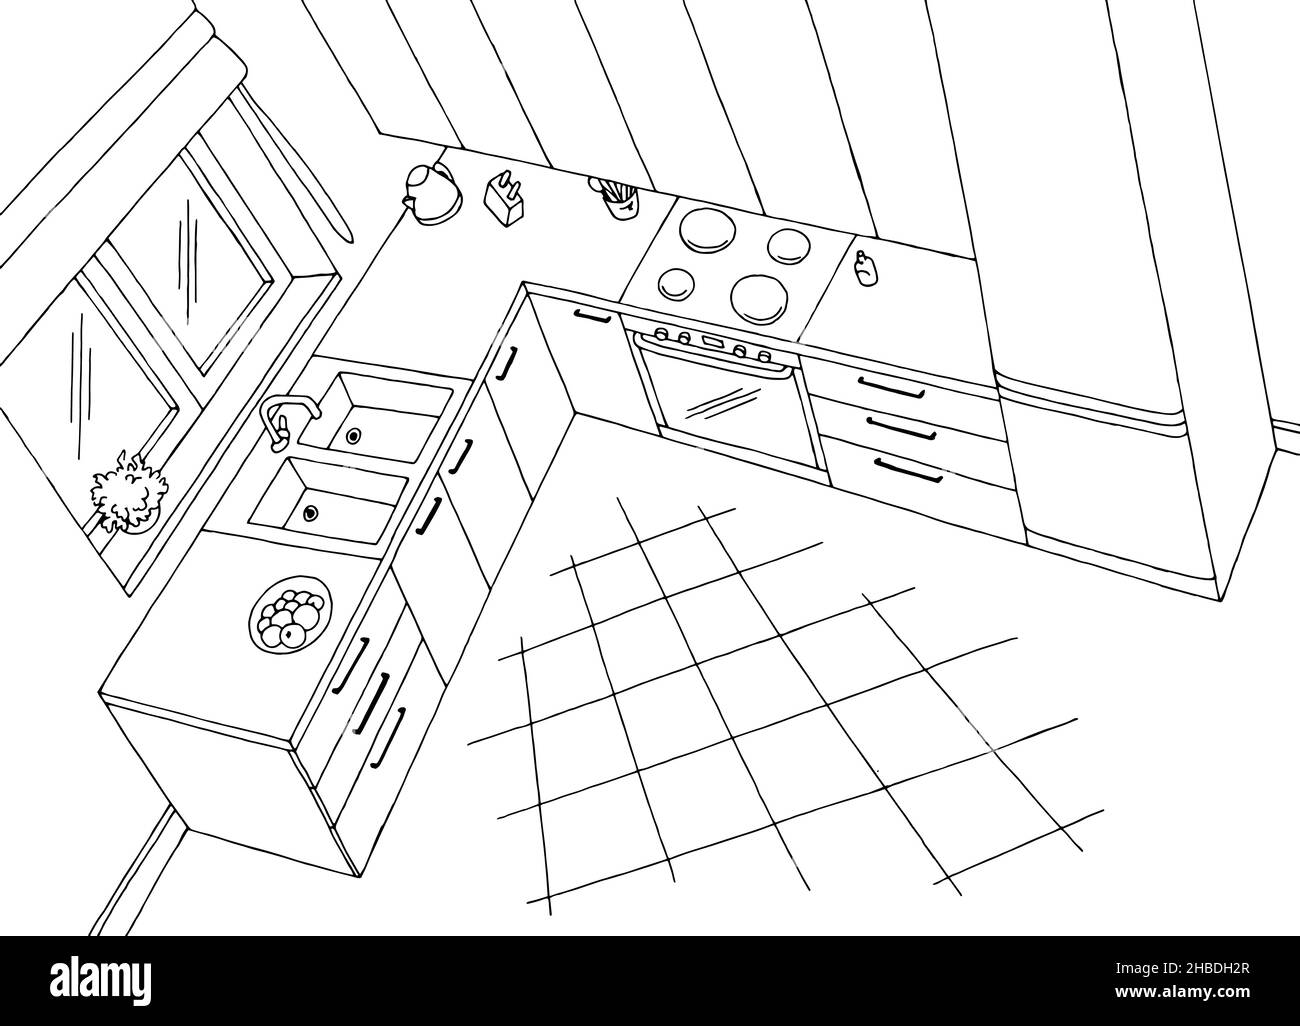 Küchenraum Innenansicht von oben Antenne schwarz weiß Grafik Skizze Illustration Vektor Stock Vektor